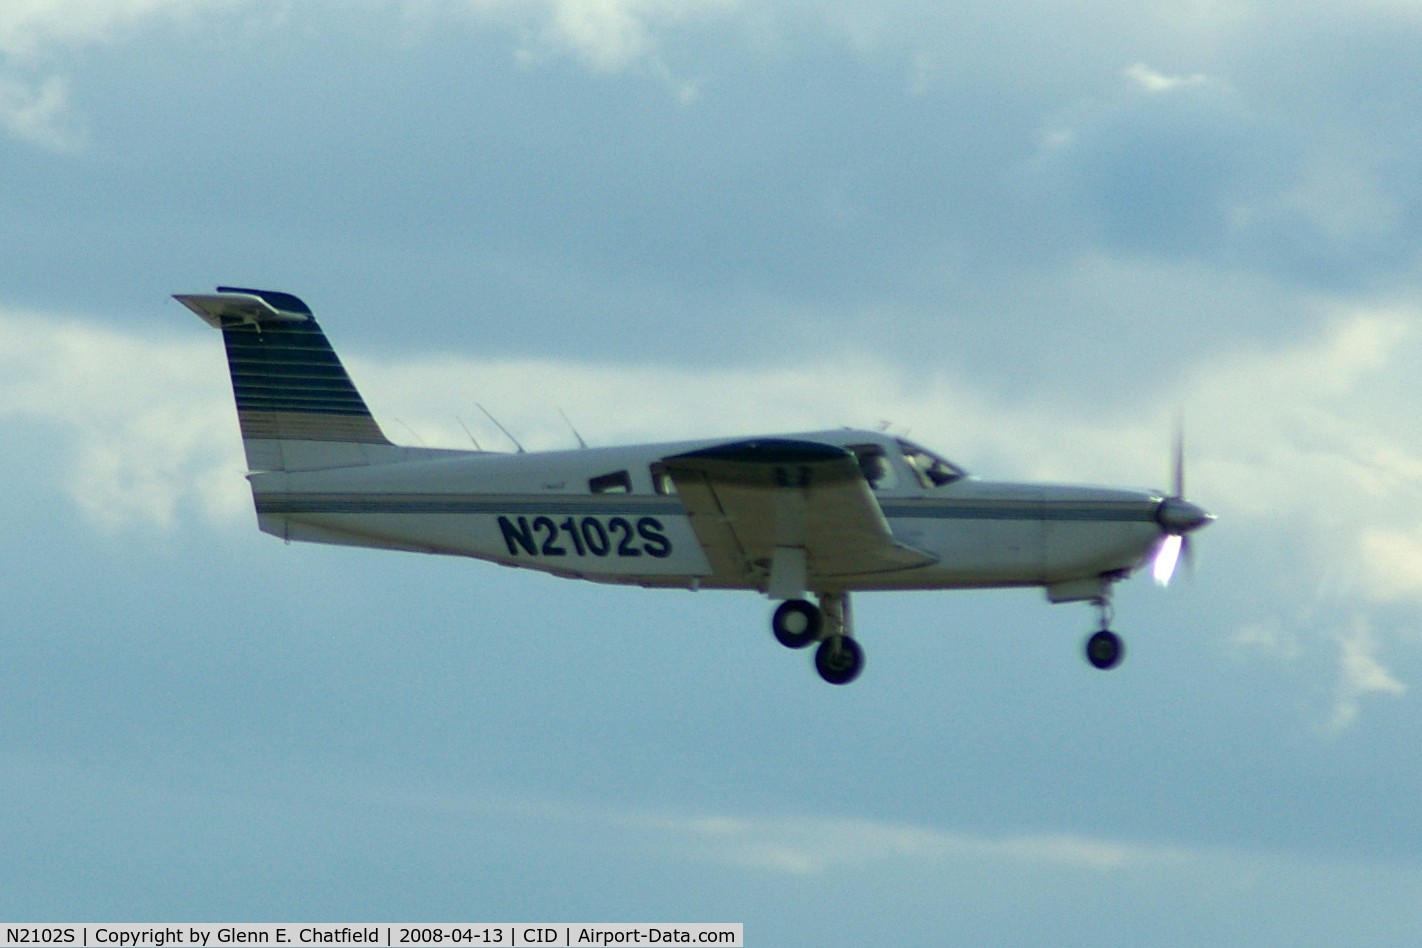 N2102S, 1979 Piper PA-32RT-300 C/N 32R-7985085, Departing Runway 31